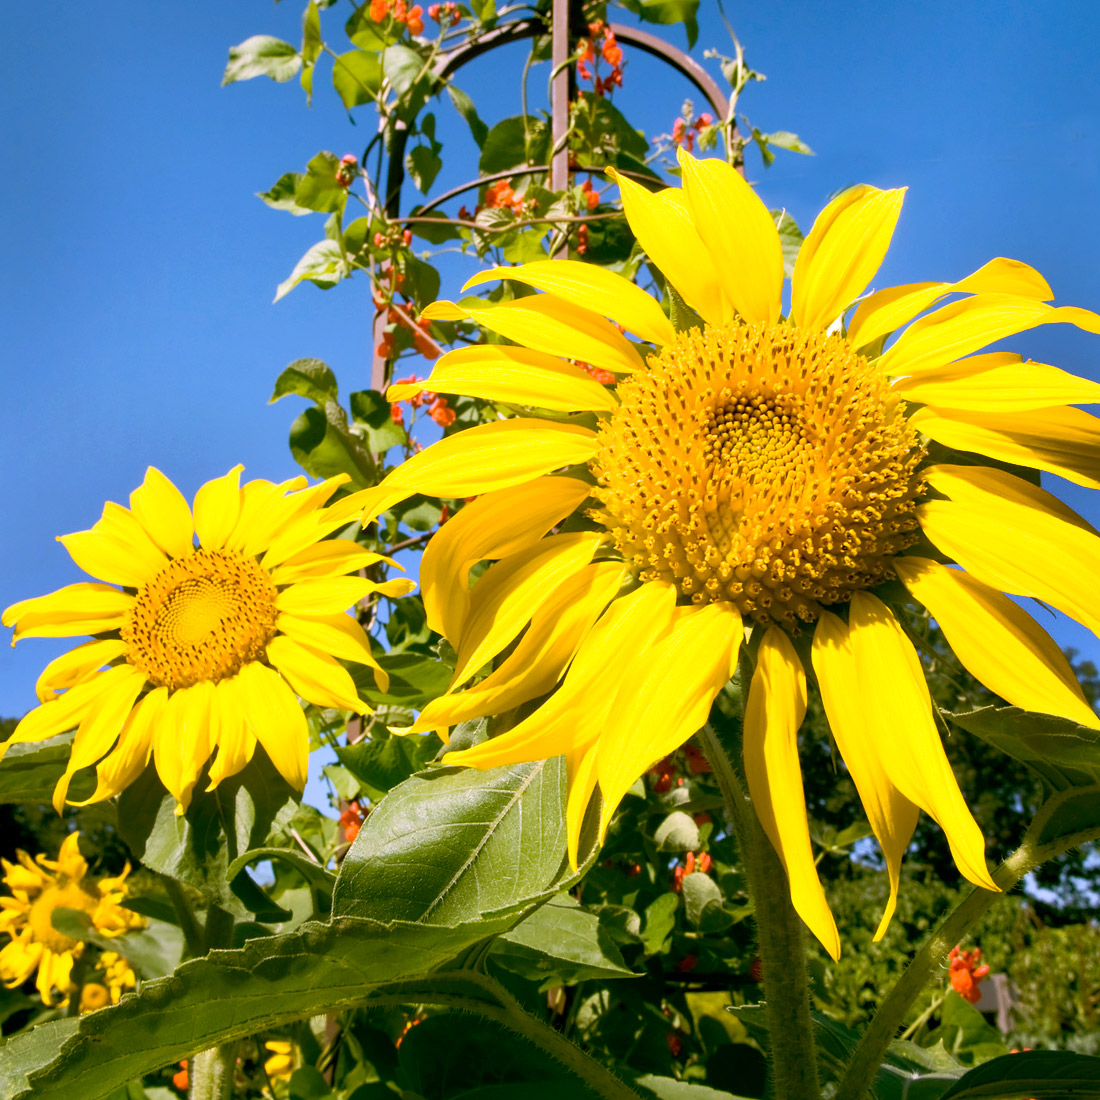 Sunflower Species